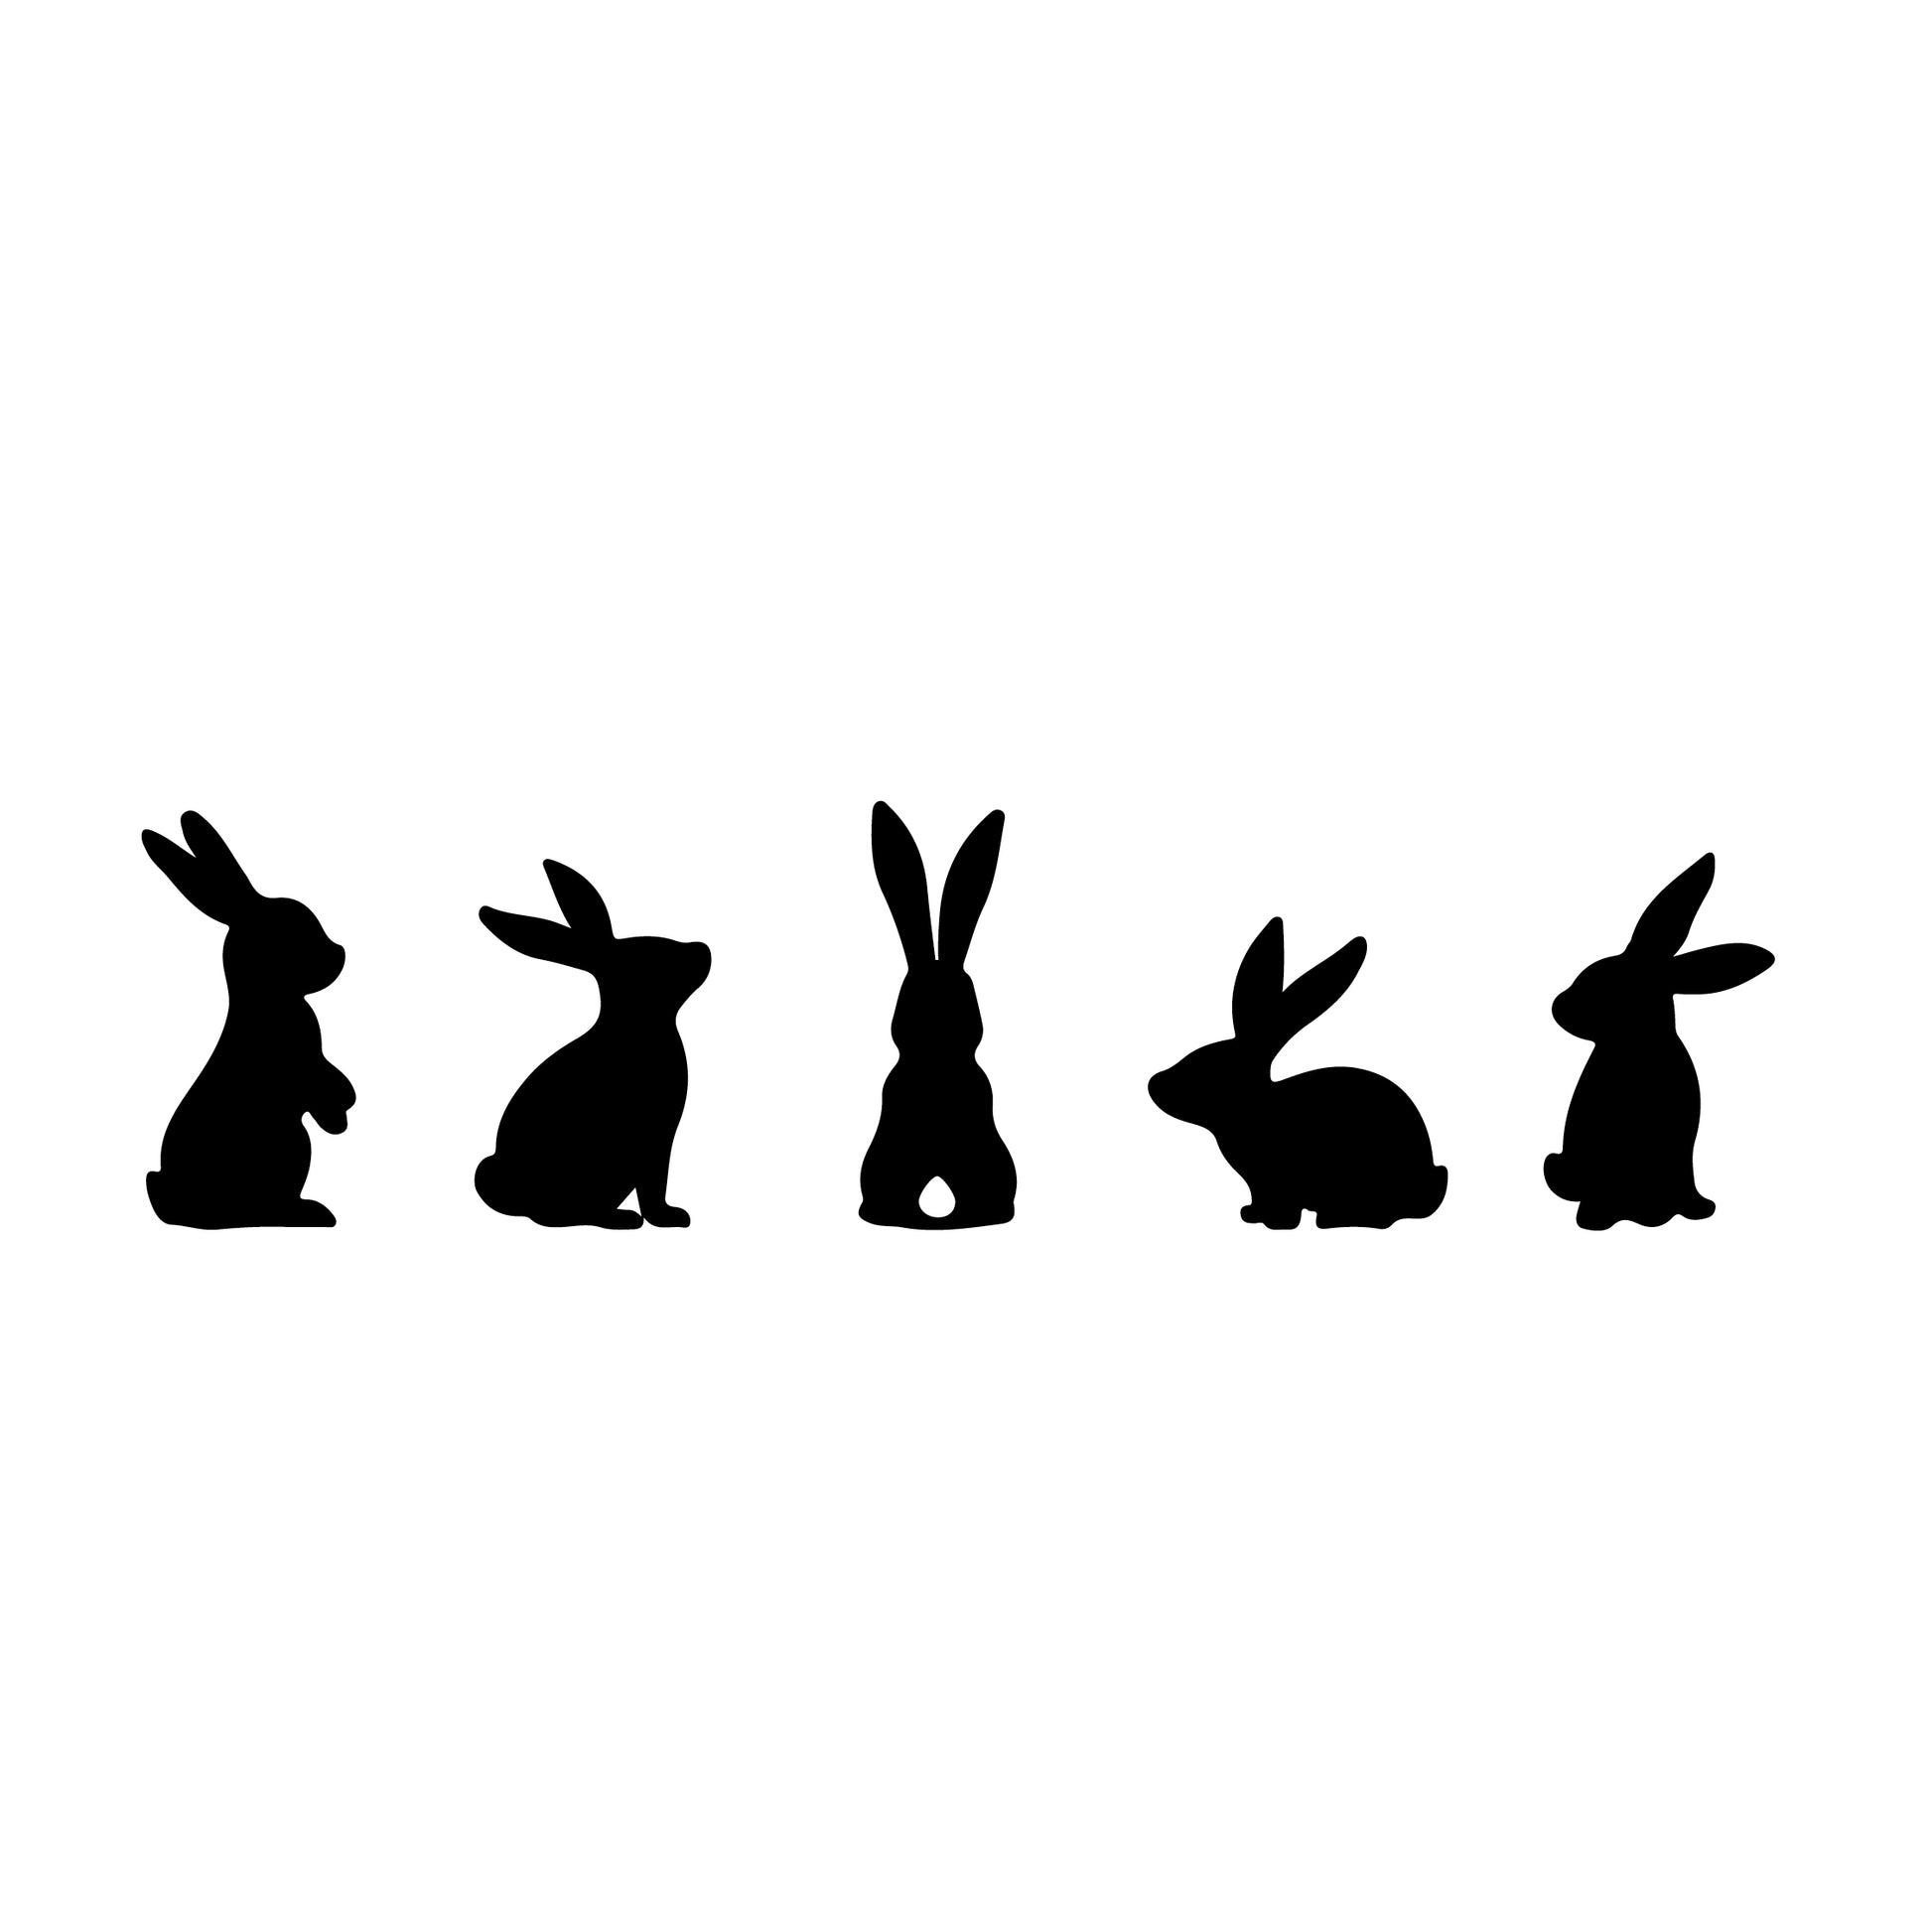 Easter Rabbit - Decal stickers in kids bedroom